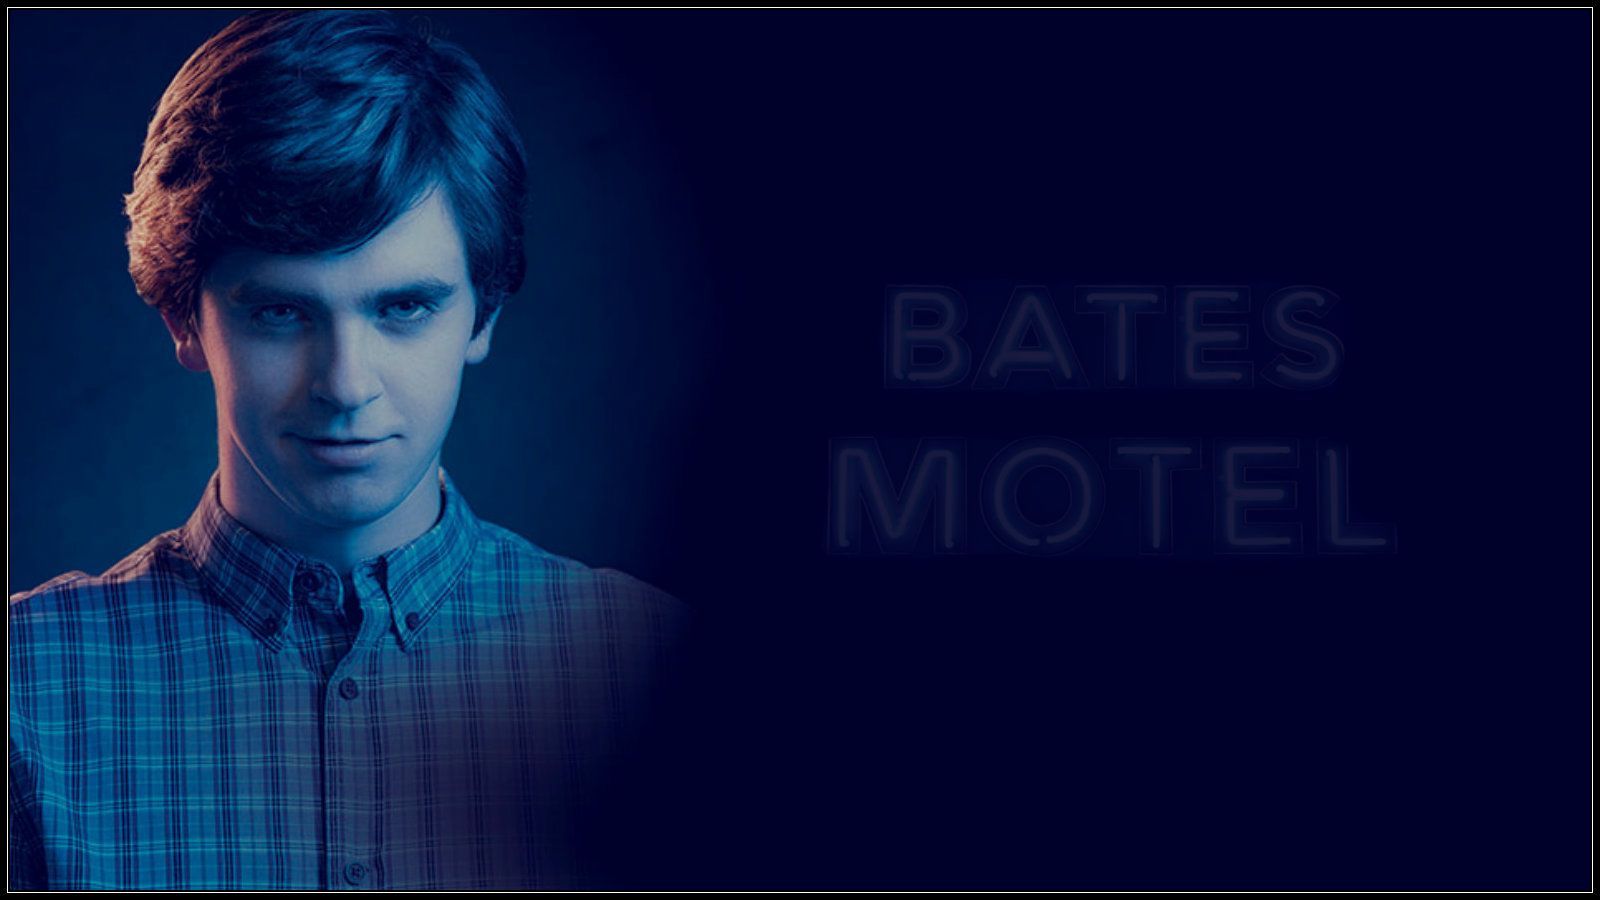 Bates Motel Wallpaper: Bates Motel s2. Bates motel, Norman bates motel, Bates motel cast